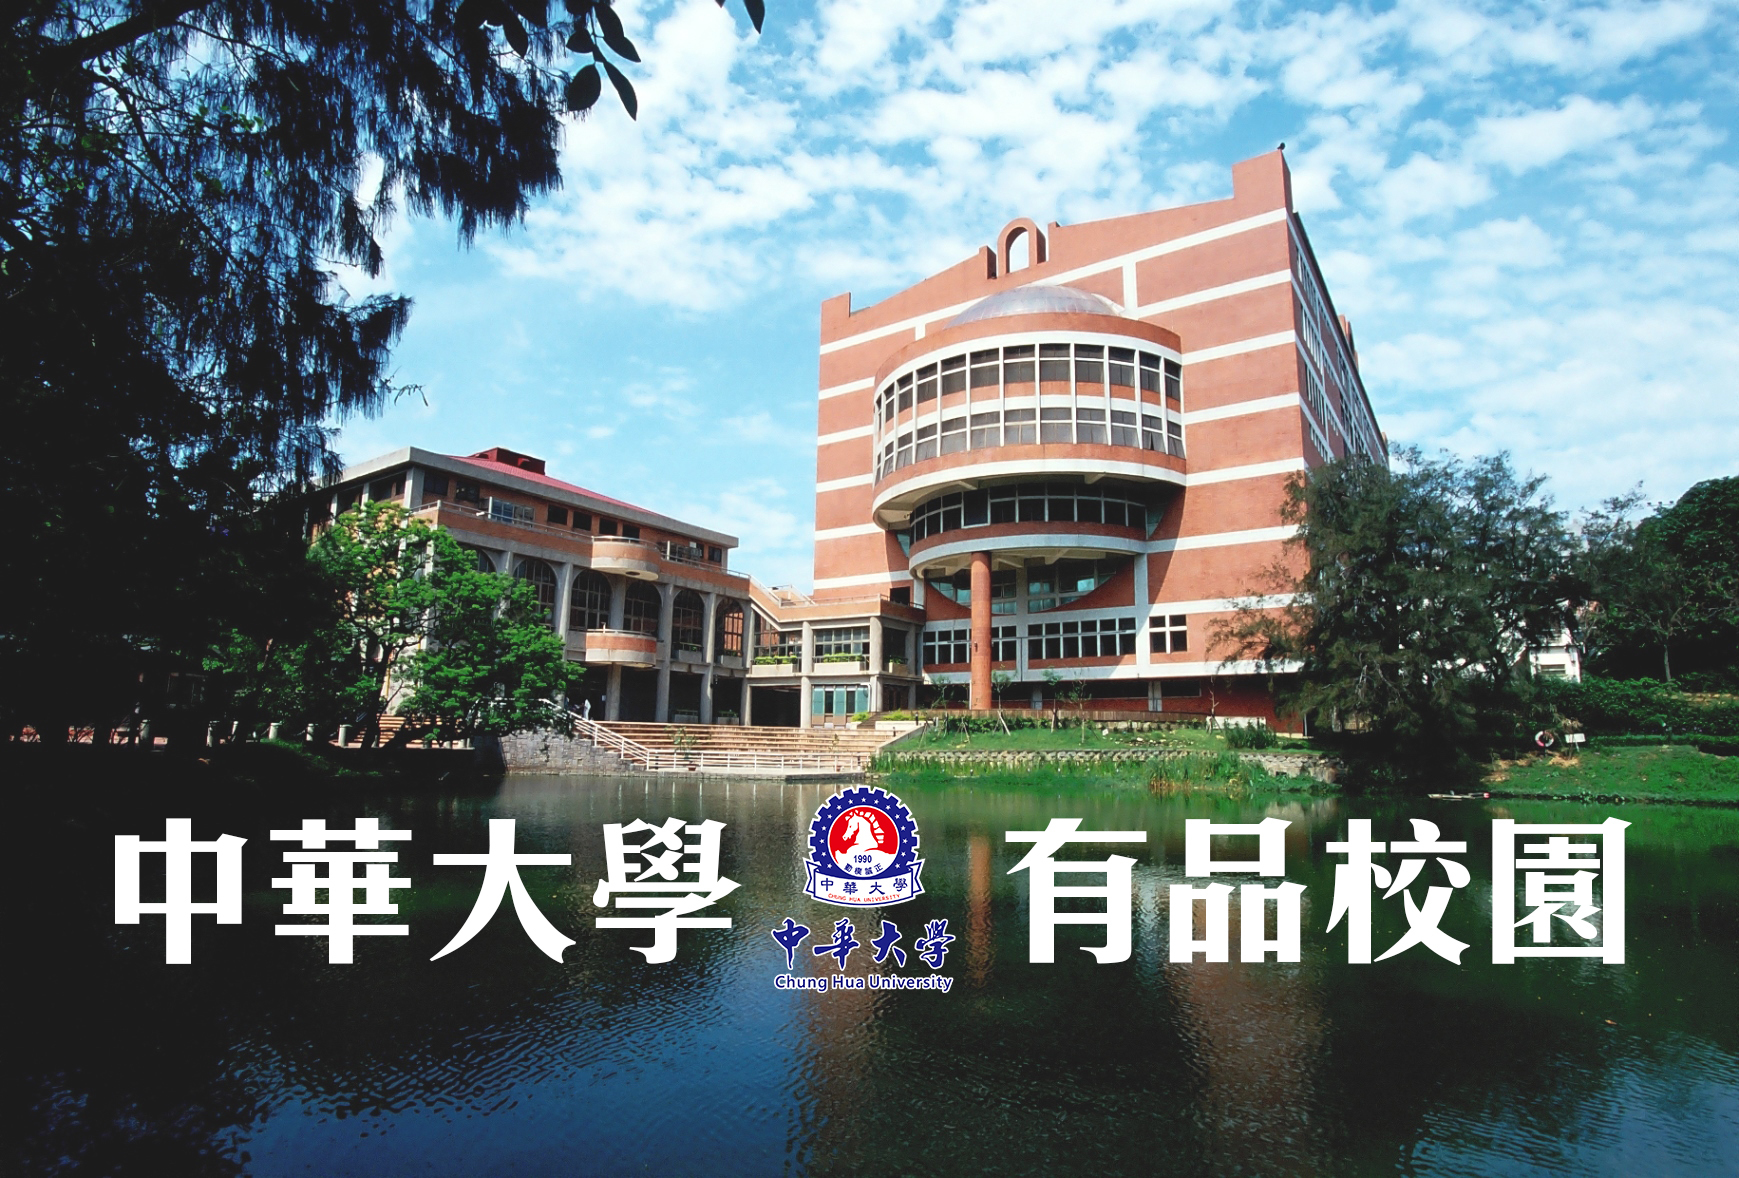 中華大學